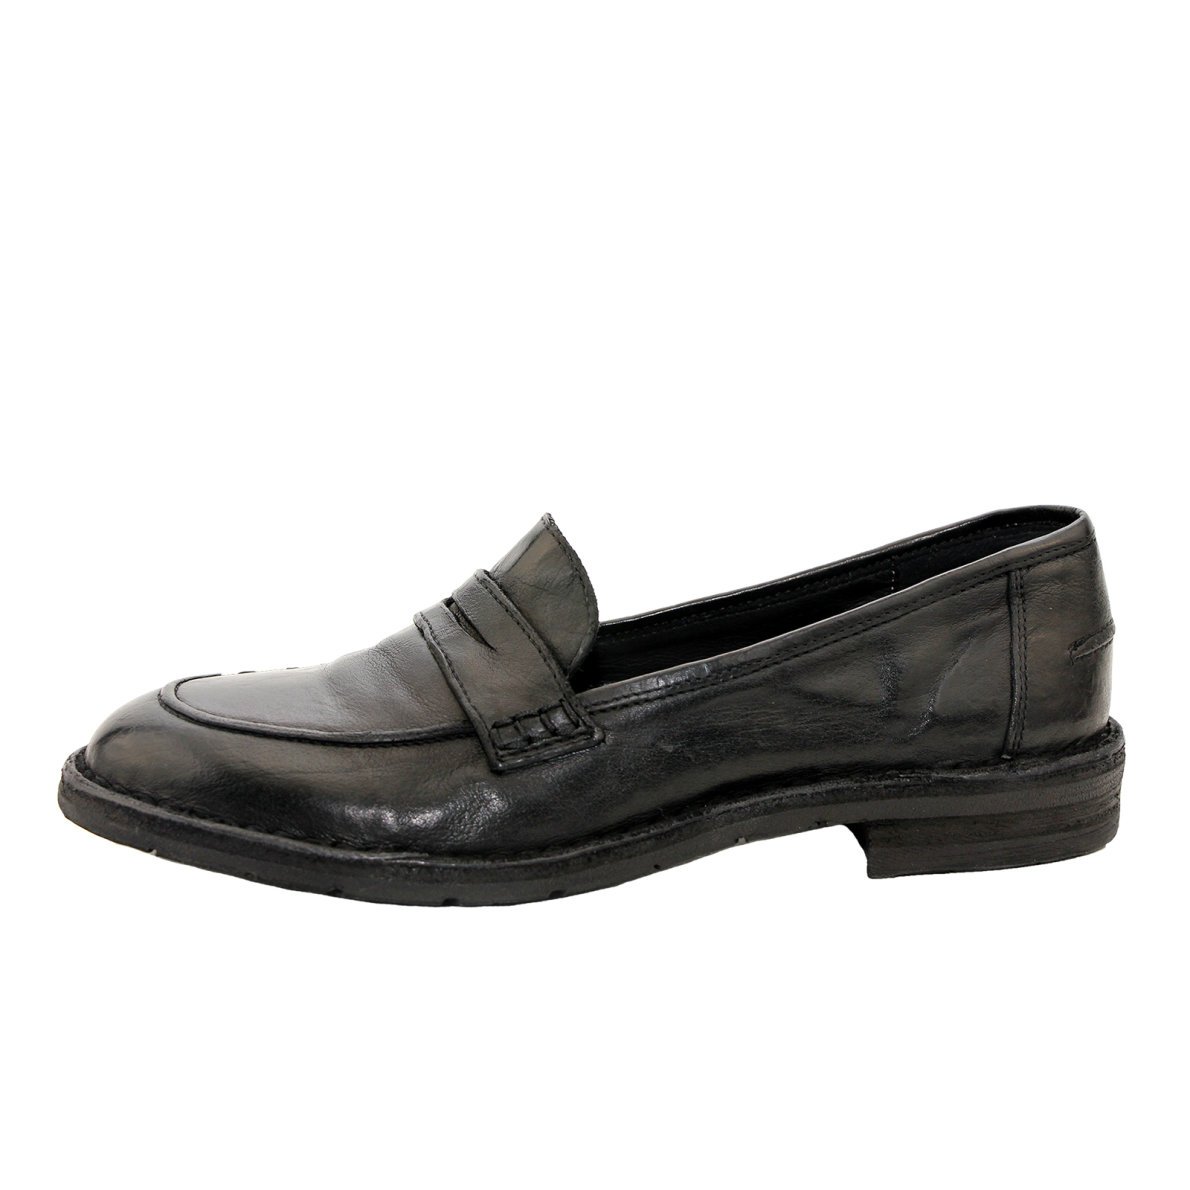 sortere Gå ud mode Bubetti loafer, sort - Bubetti - Fiona sko